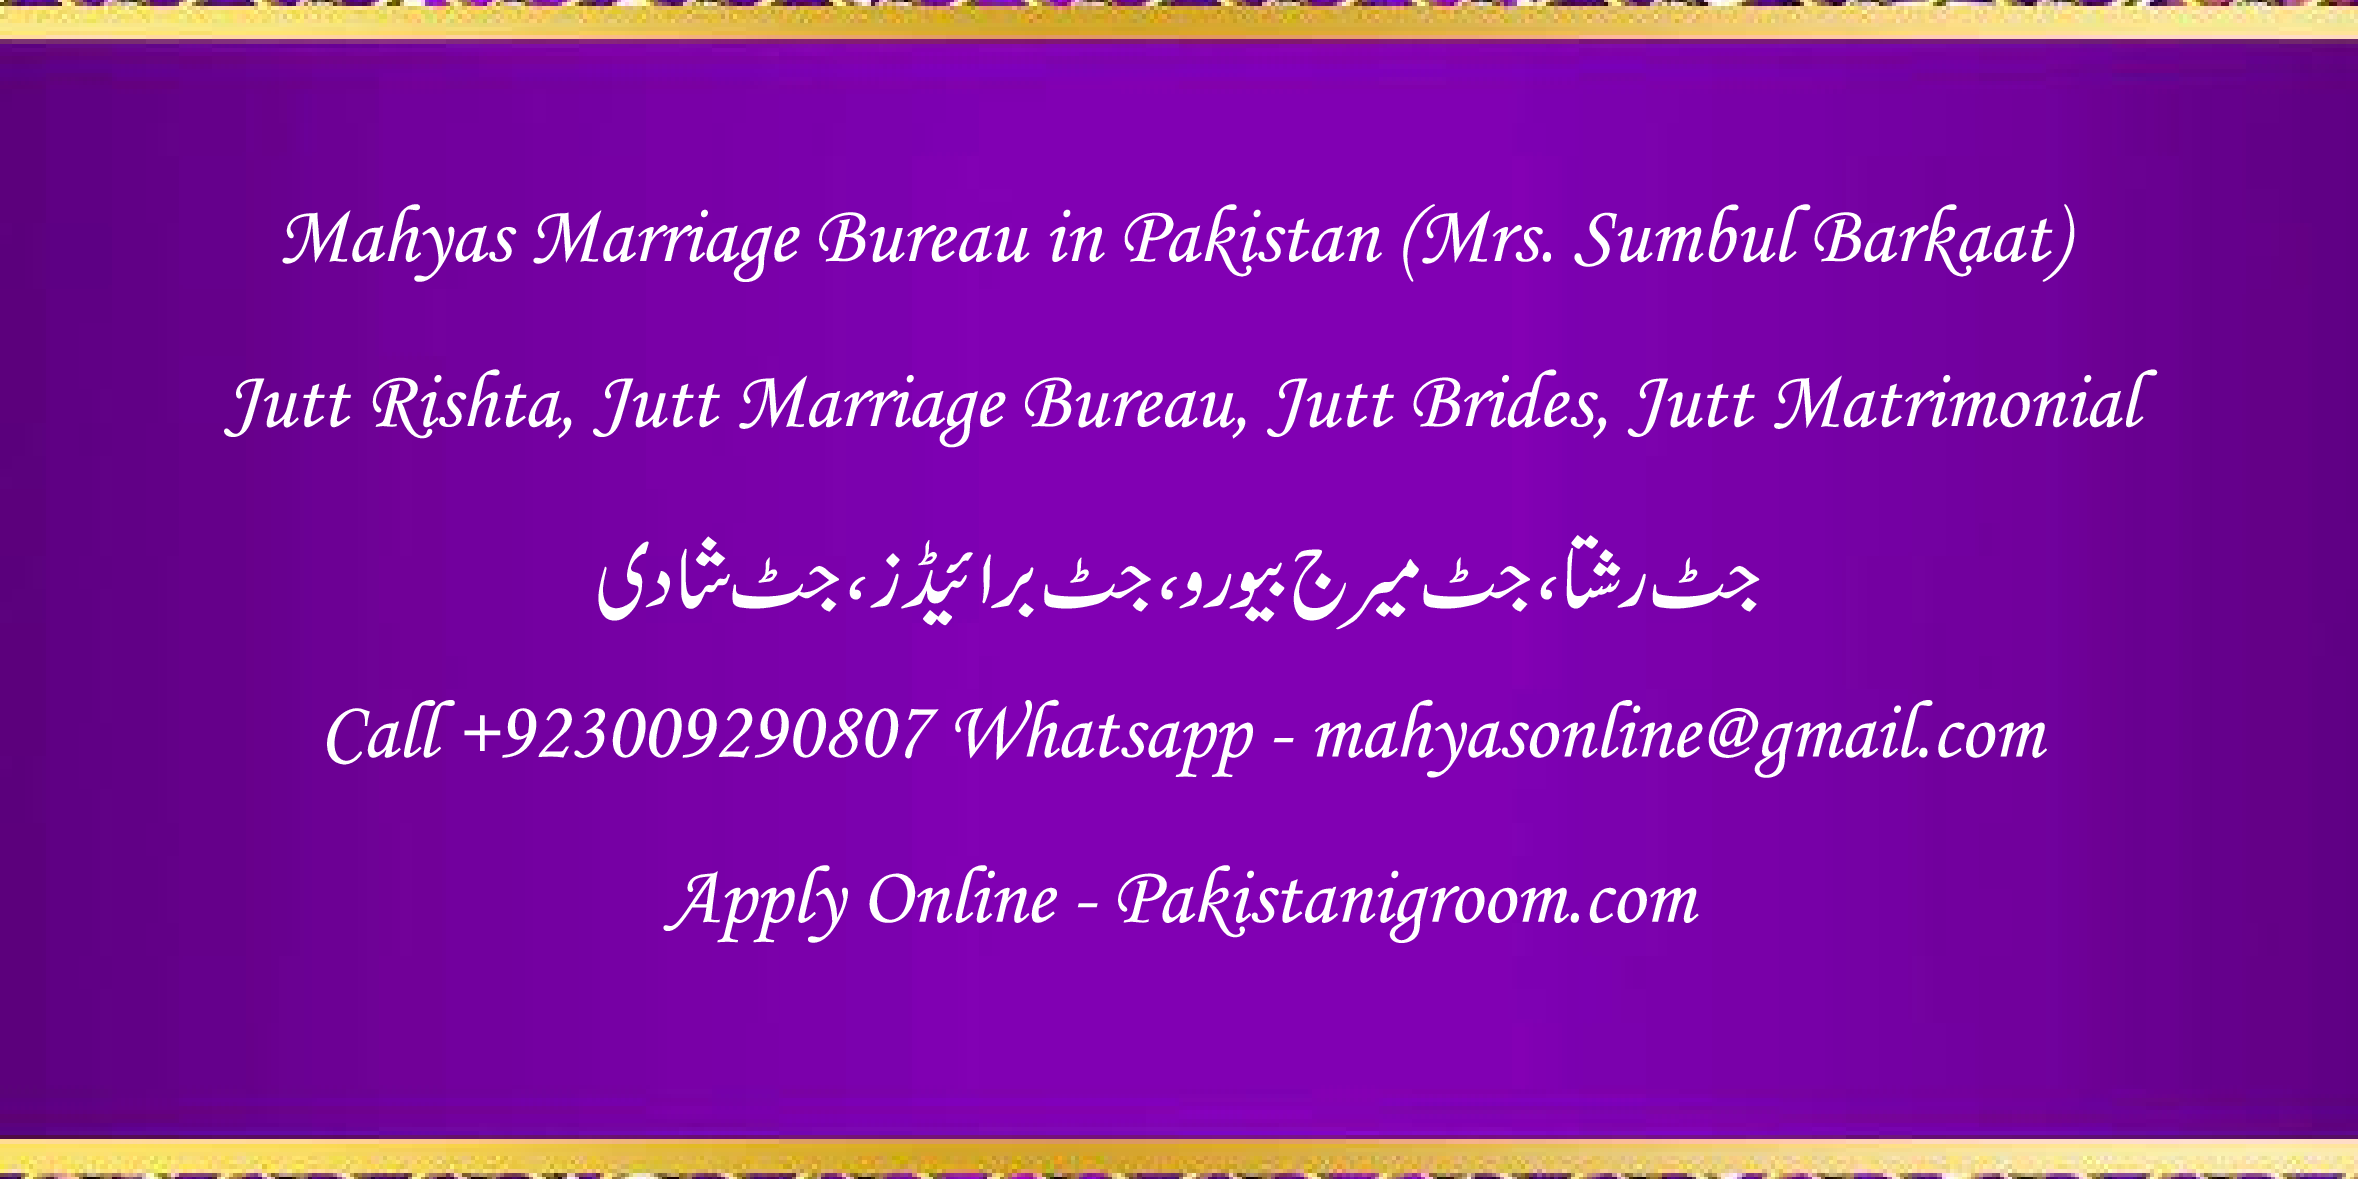 Mahyas-marriage-bureau-Karachi-Pakistan-for-Shia-Sunni-Remarriage-Divorce-Widow-Second-marriage-Punjabi-Pashto-Urdu-12.png